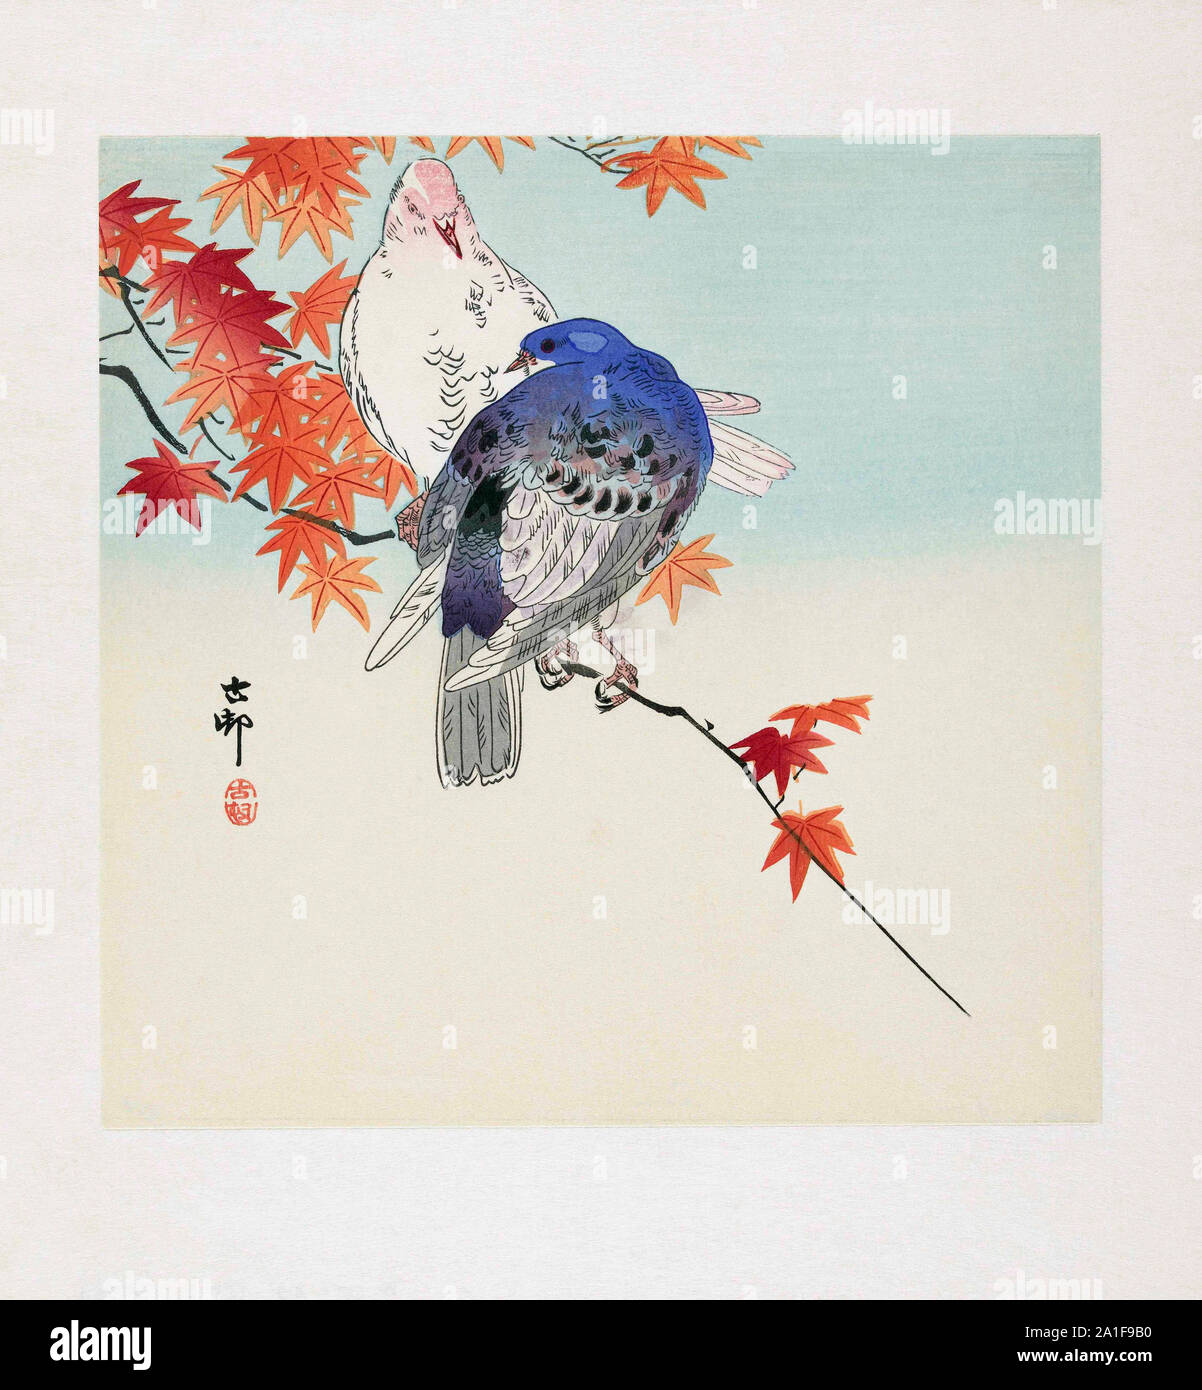 Deux pigeons sur une branche avec les feuilles d'automne, par l'artiste japonais Ohara Koson, 1877 - 1945. Ohara Koson faisait partie de la shin-hanga, ou nouvelle imprime le mouvement. Banque D'Images